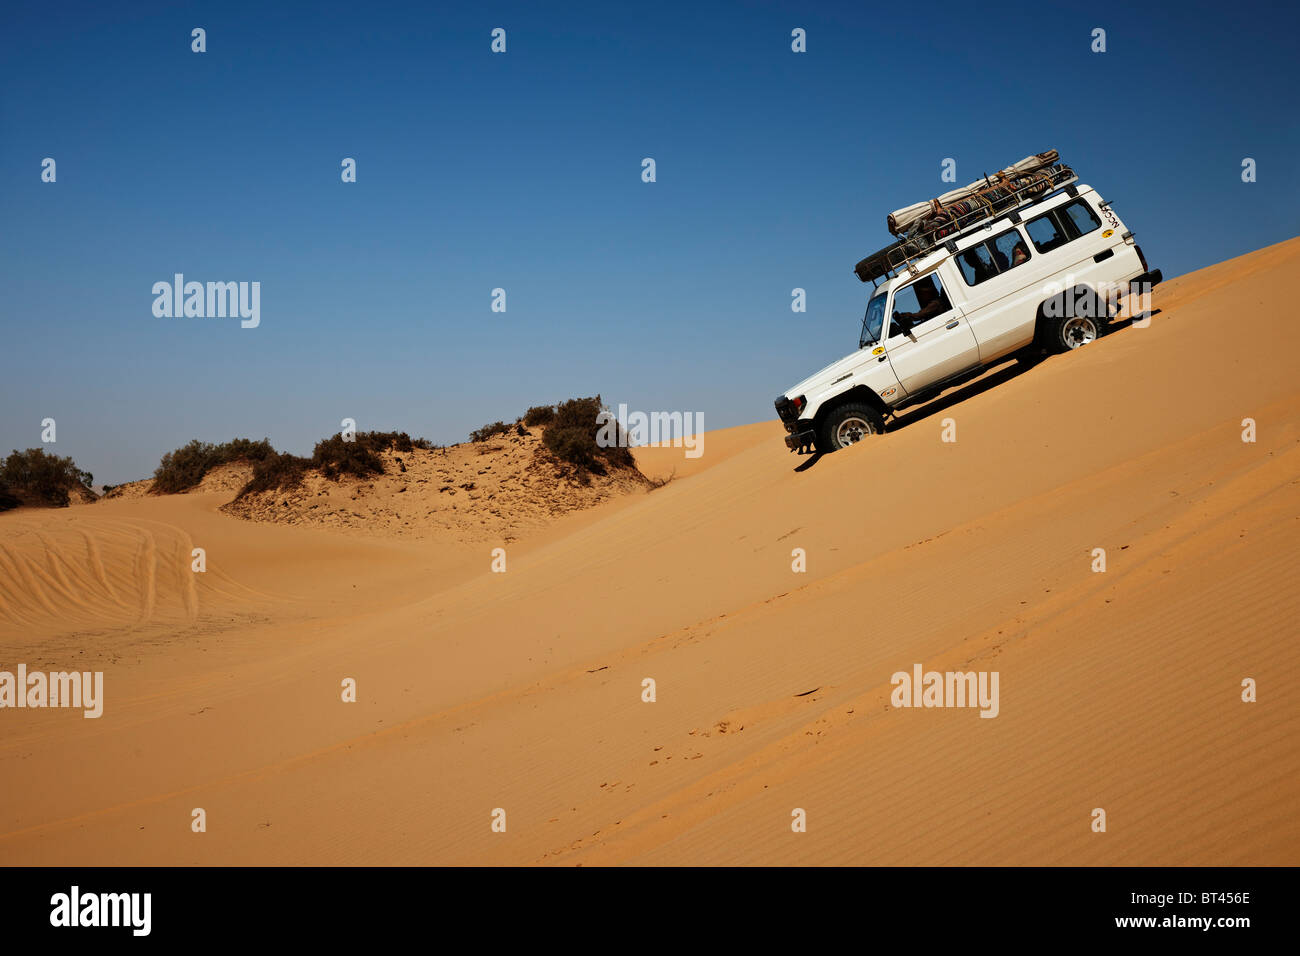 4 x 4 Offroad Auto in Wüstenlandschaft in der Nähe von Oase Dakhla, westliche Wüste, Ägypten, Arabien, Afrika Stockfoto